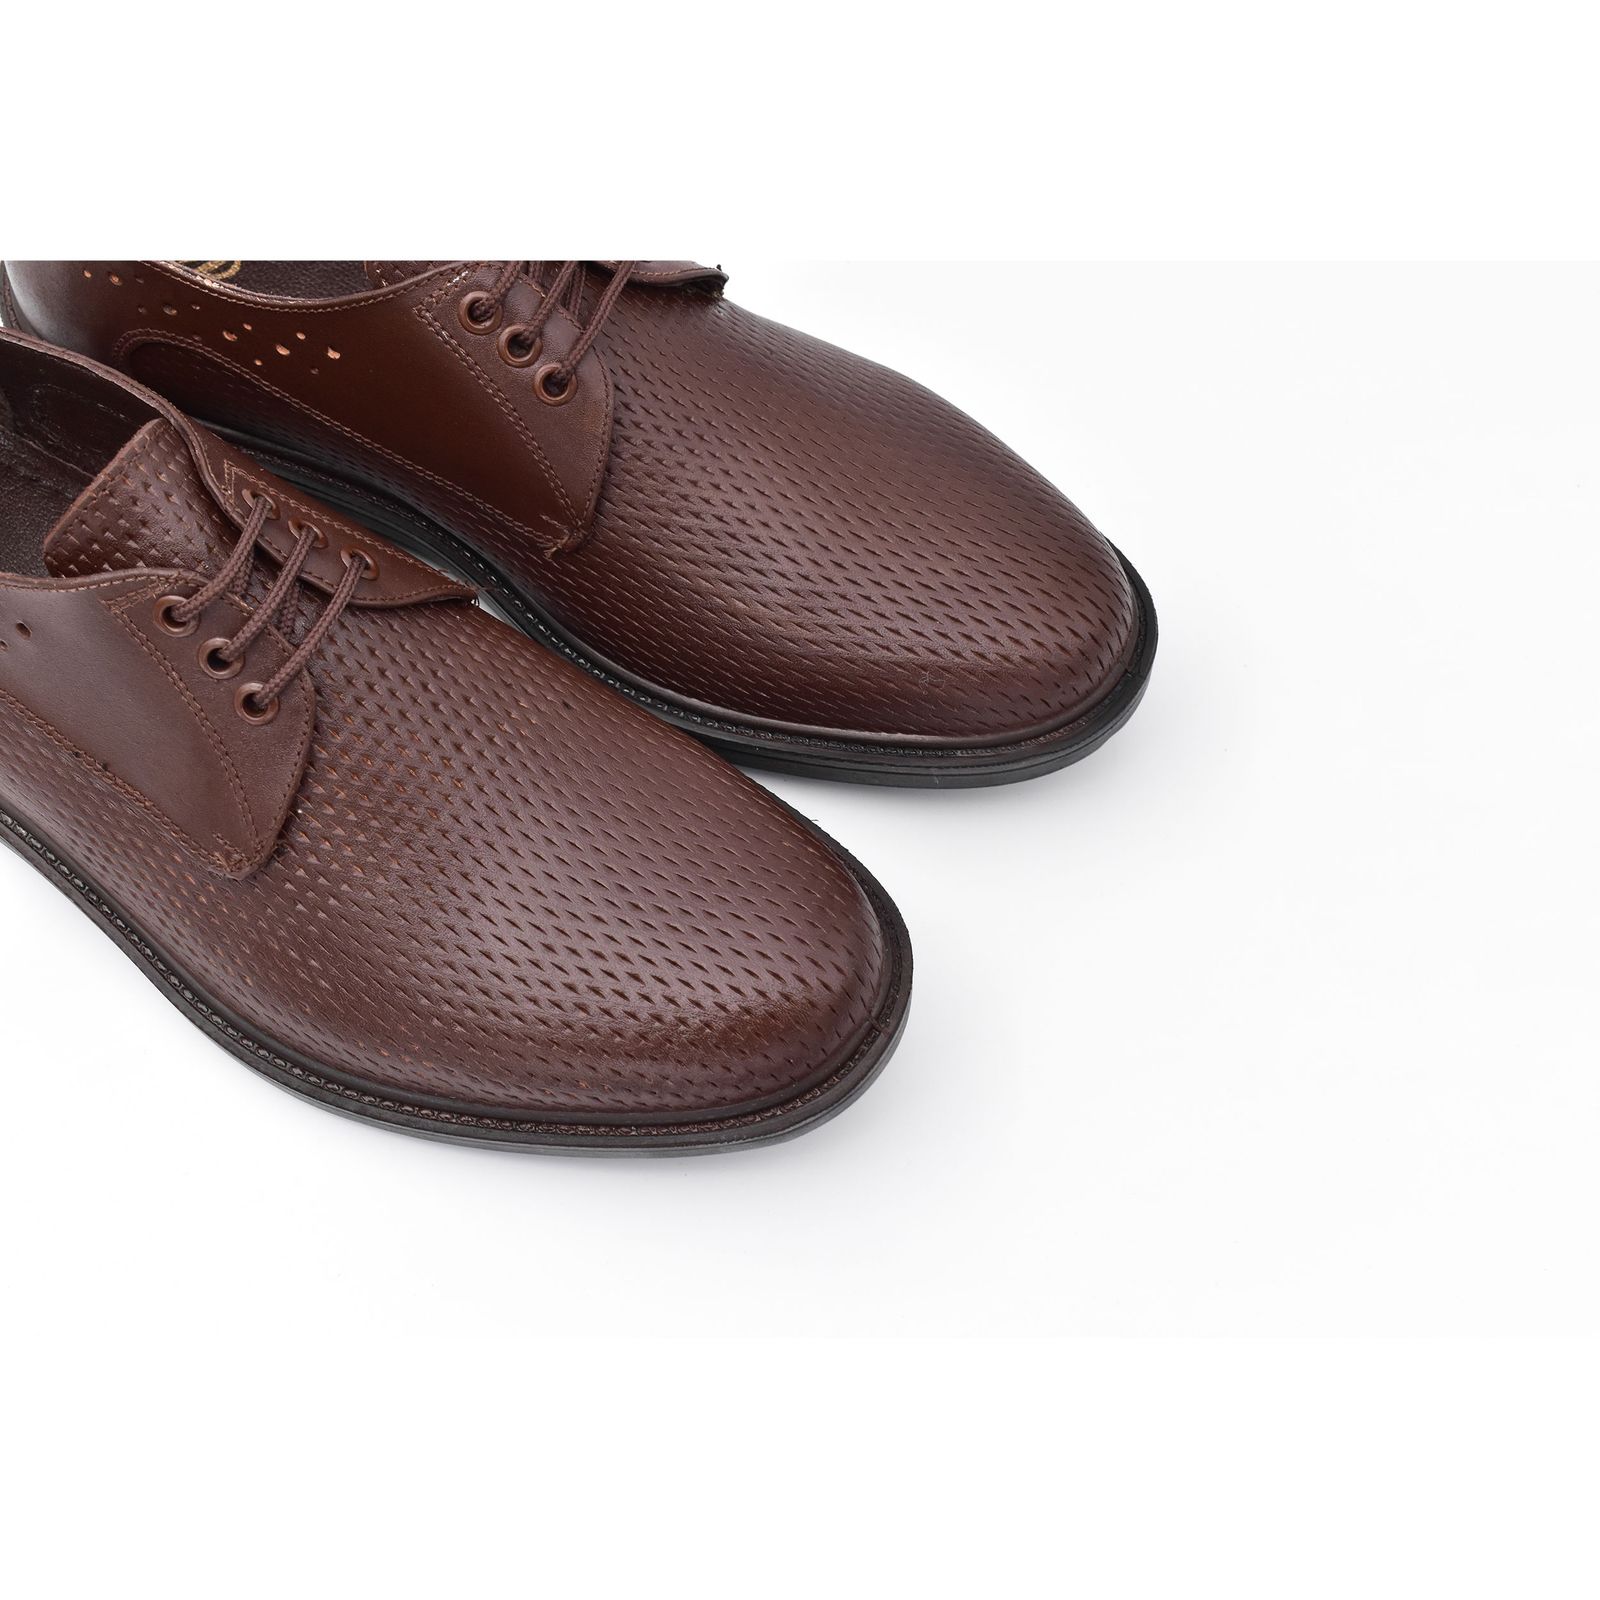 کفش مردانه پاما مدل Morano کد G1183 -  - 3